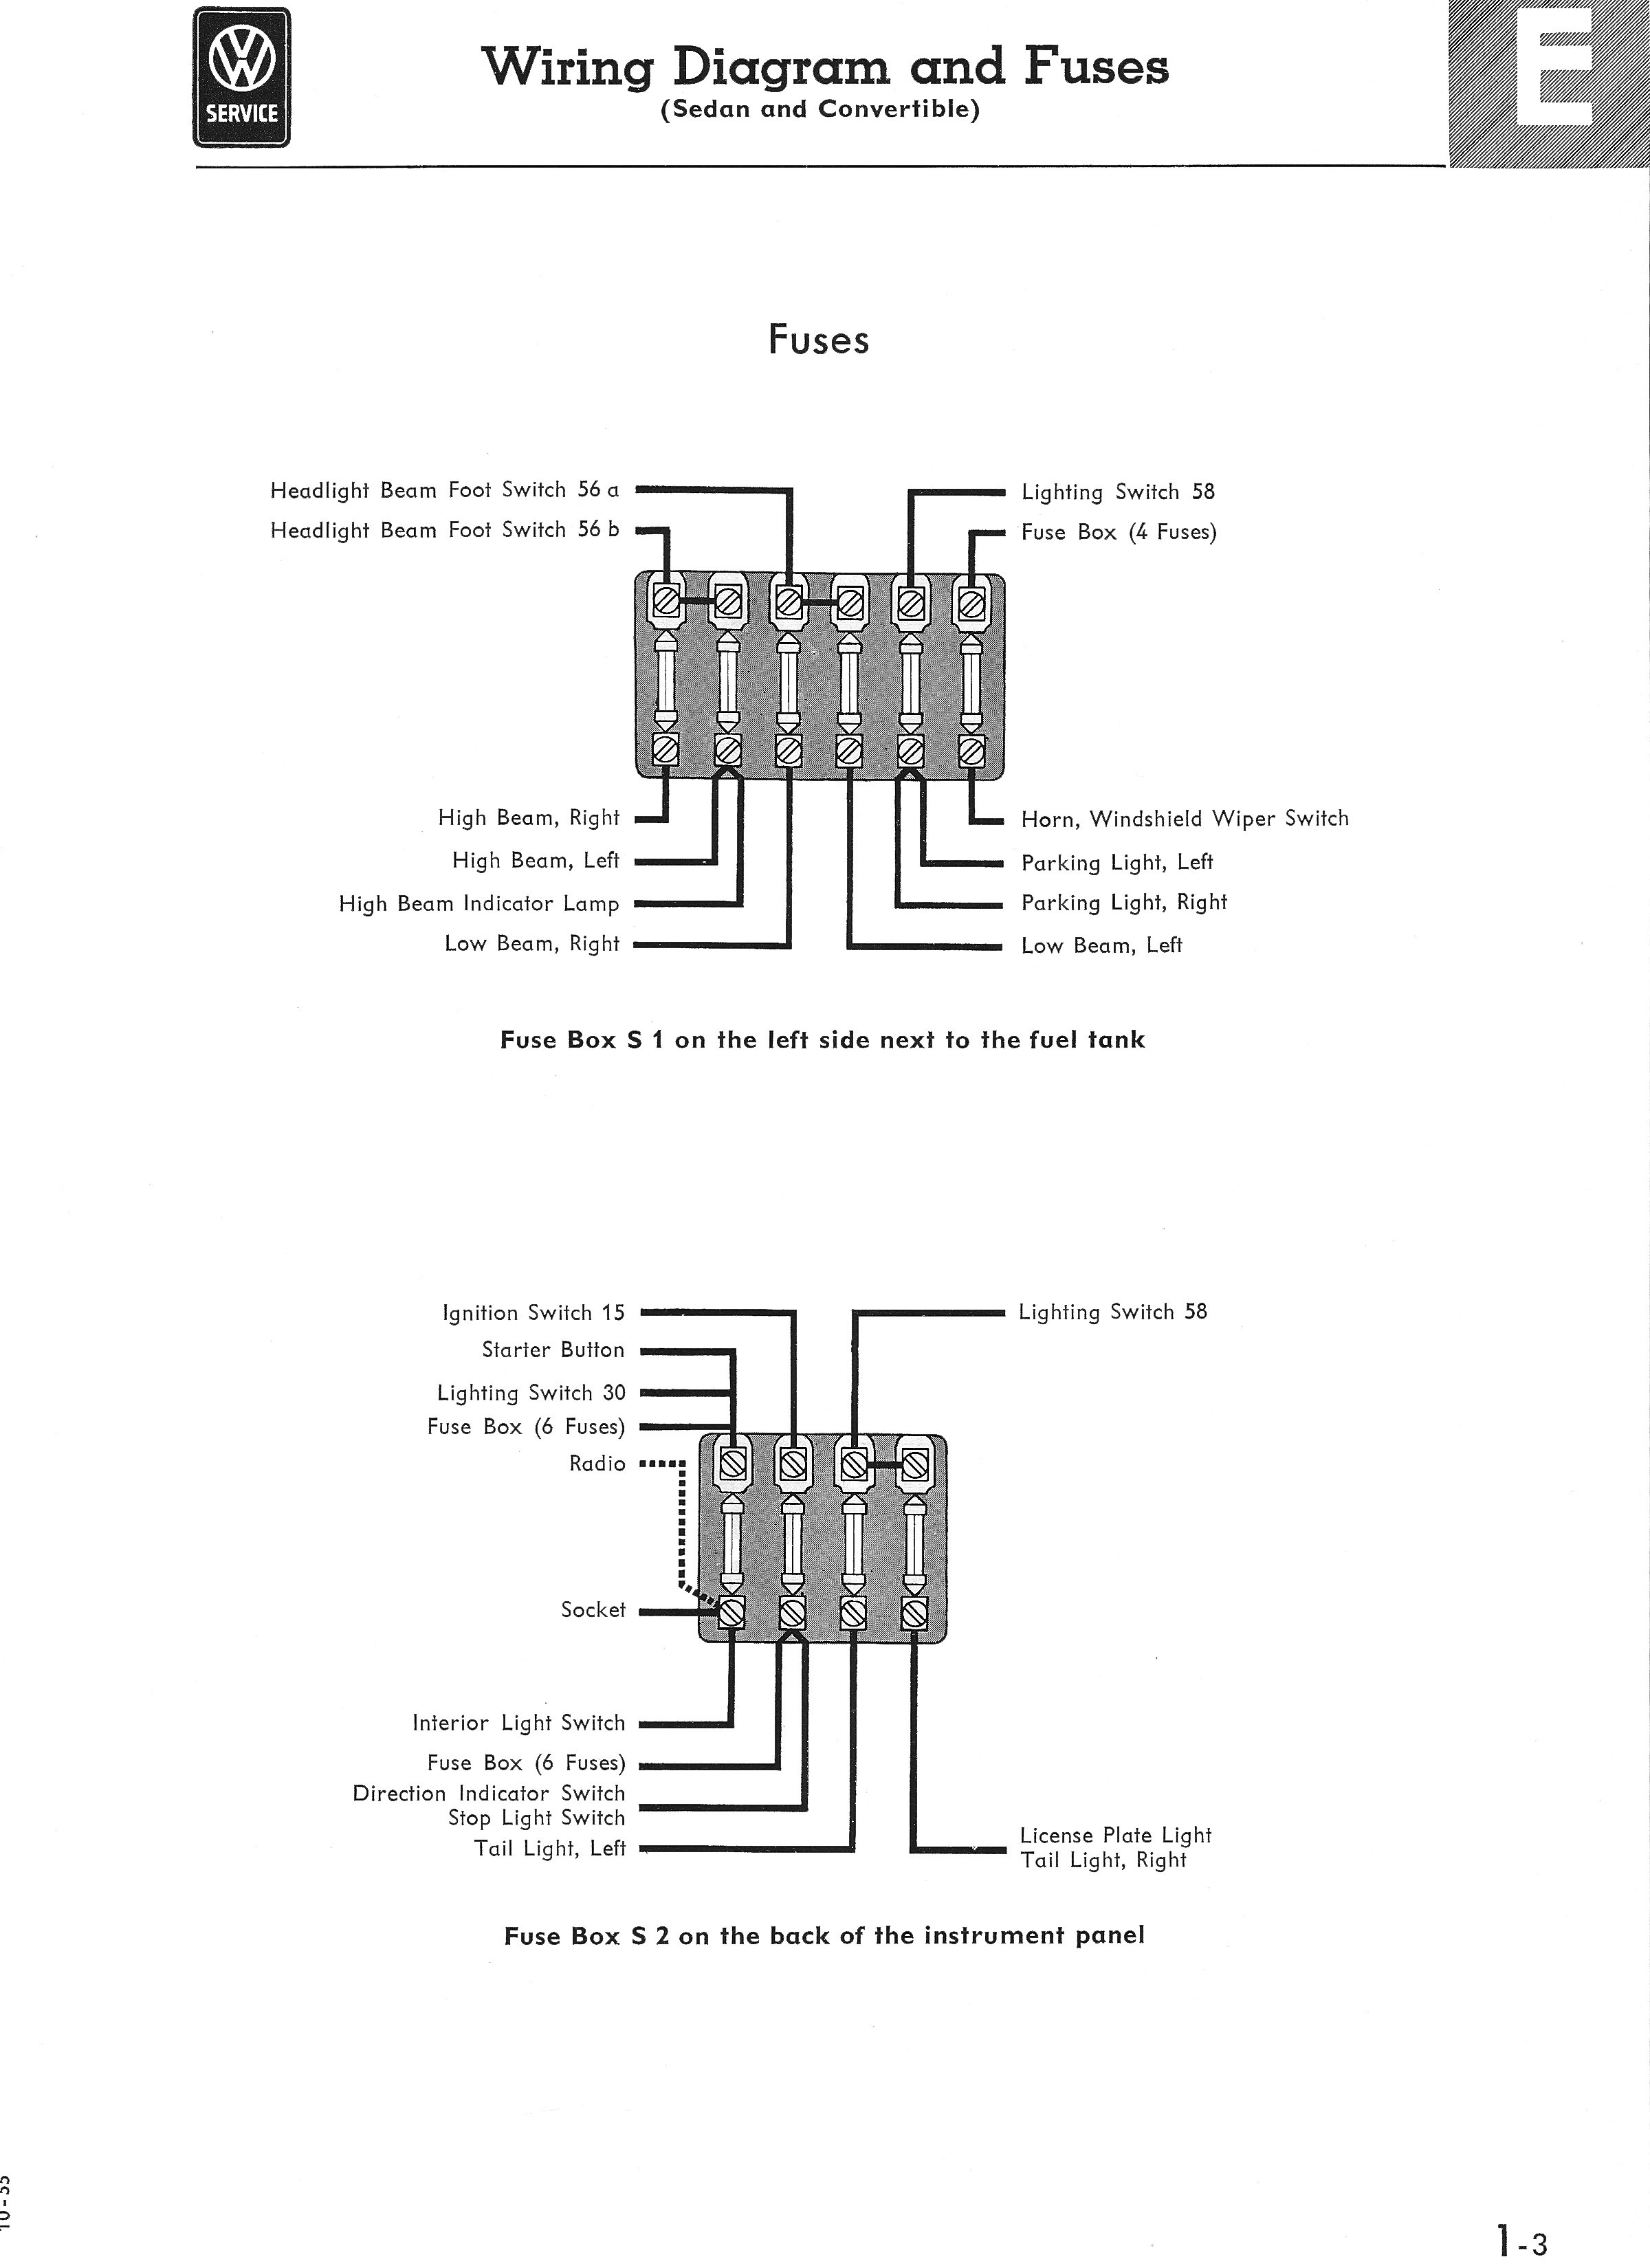 2002 Passat Engine Diagram 1967 Vw Fuse Box Diagram Experts Wiring Diagram • Of 2002 Passat Engine Diagram